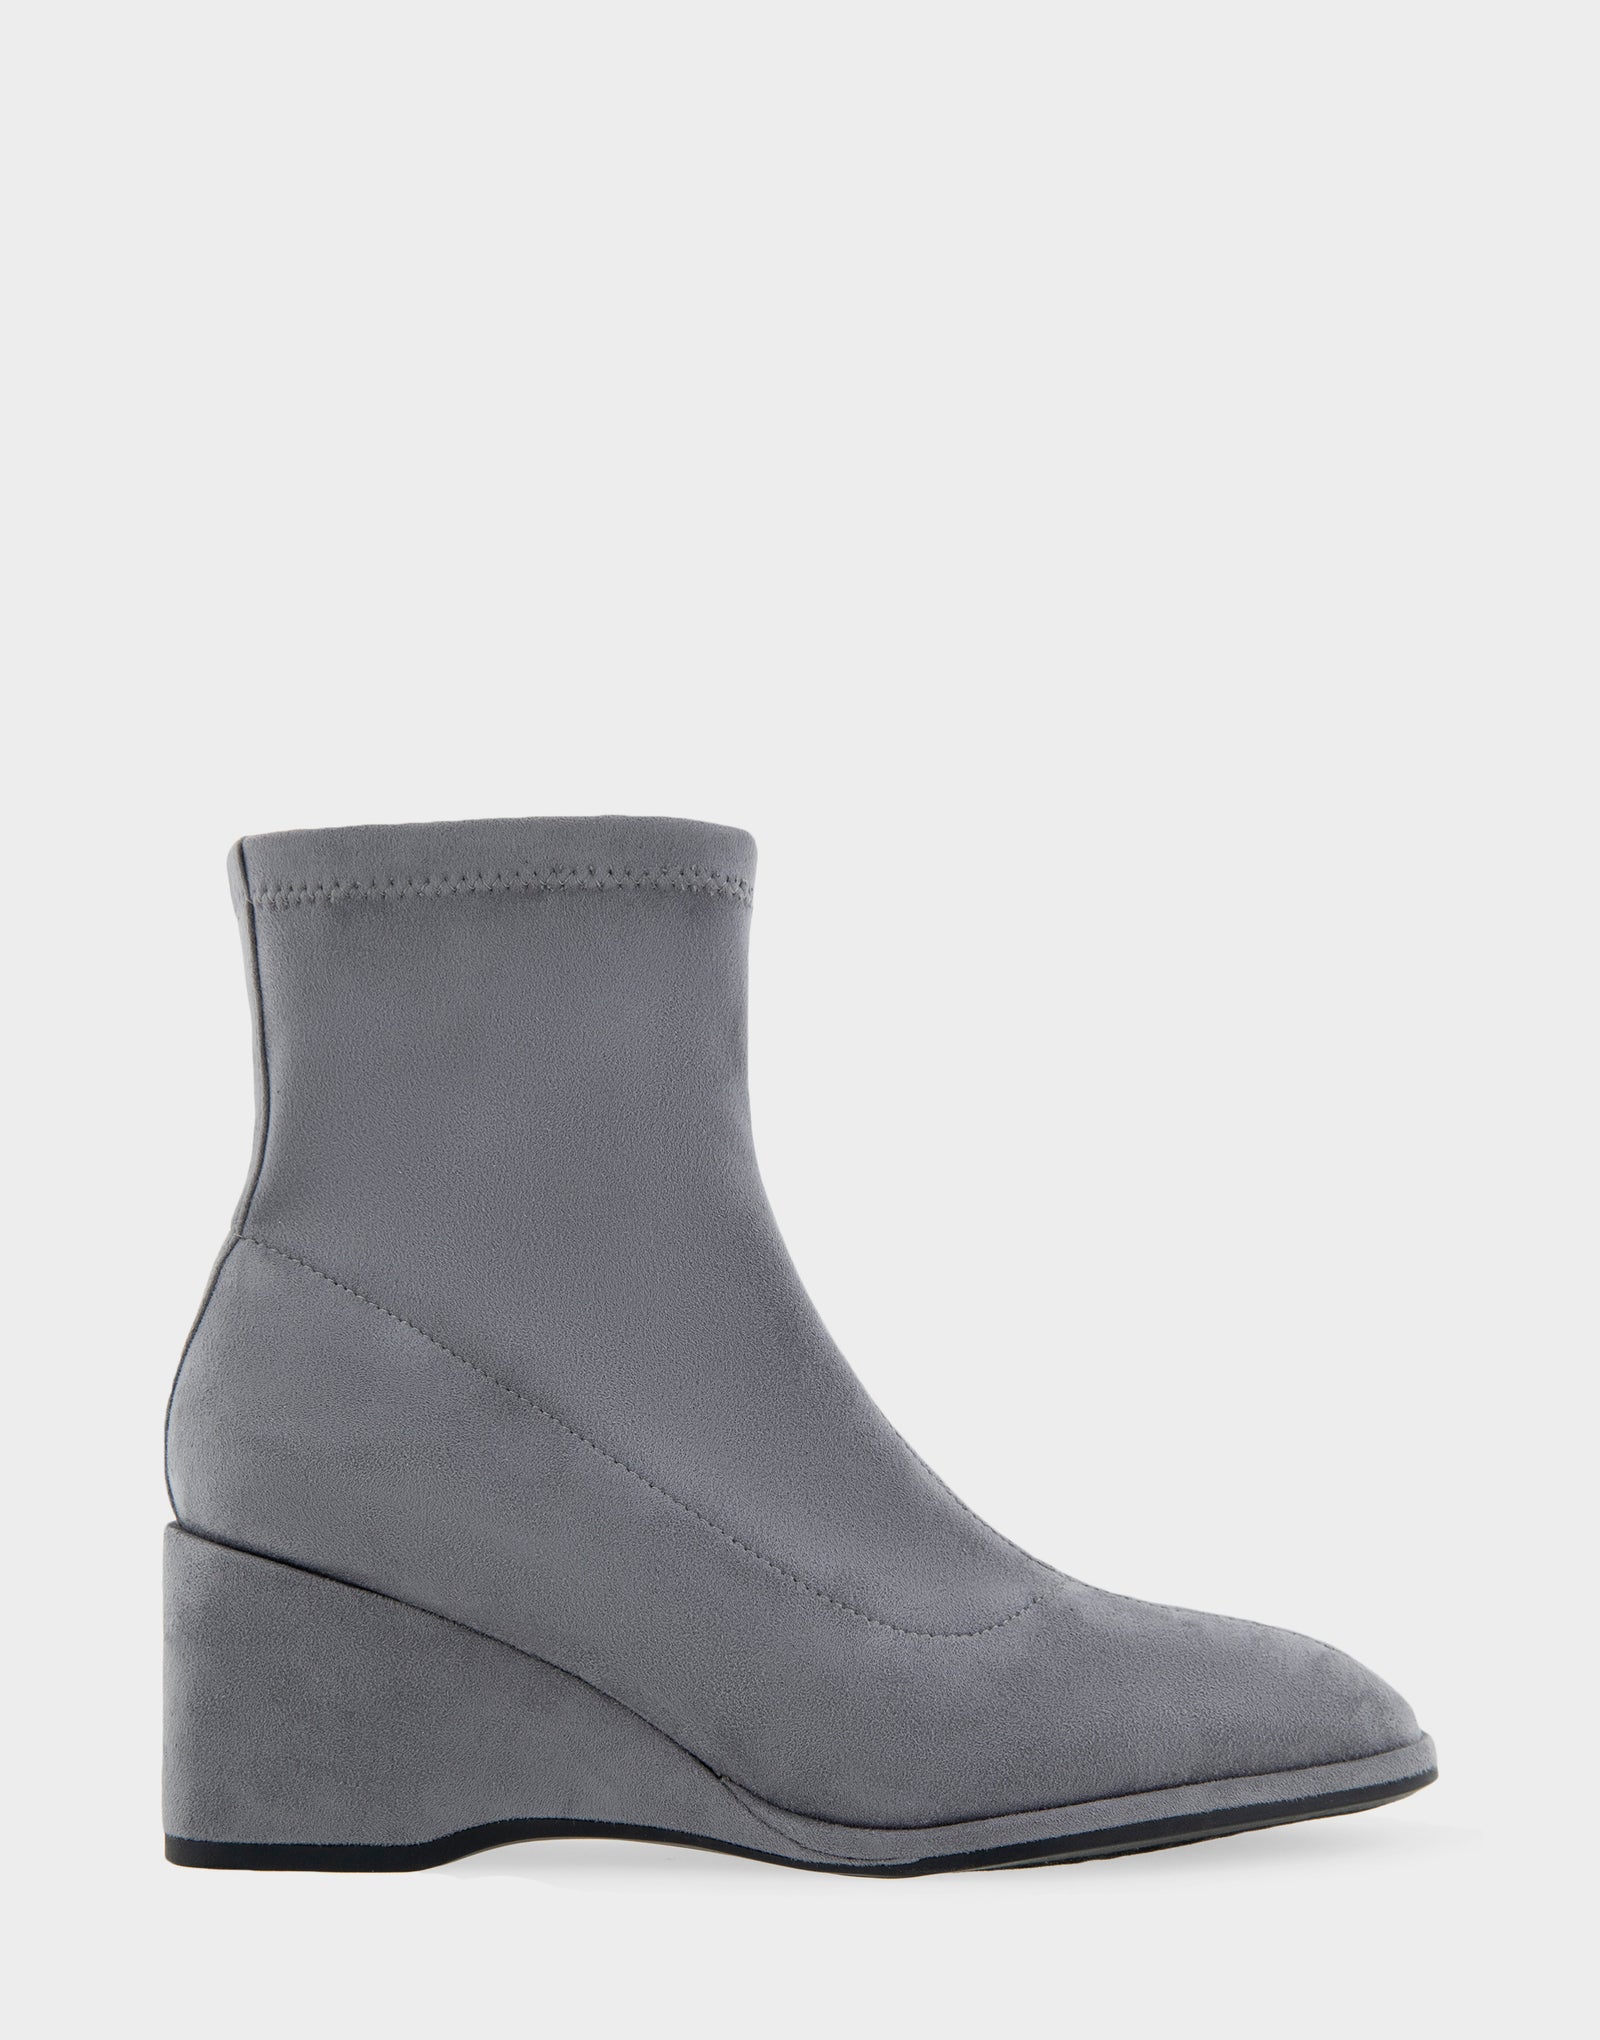 Women's Wedge Heel Ankle Boot in Grey